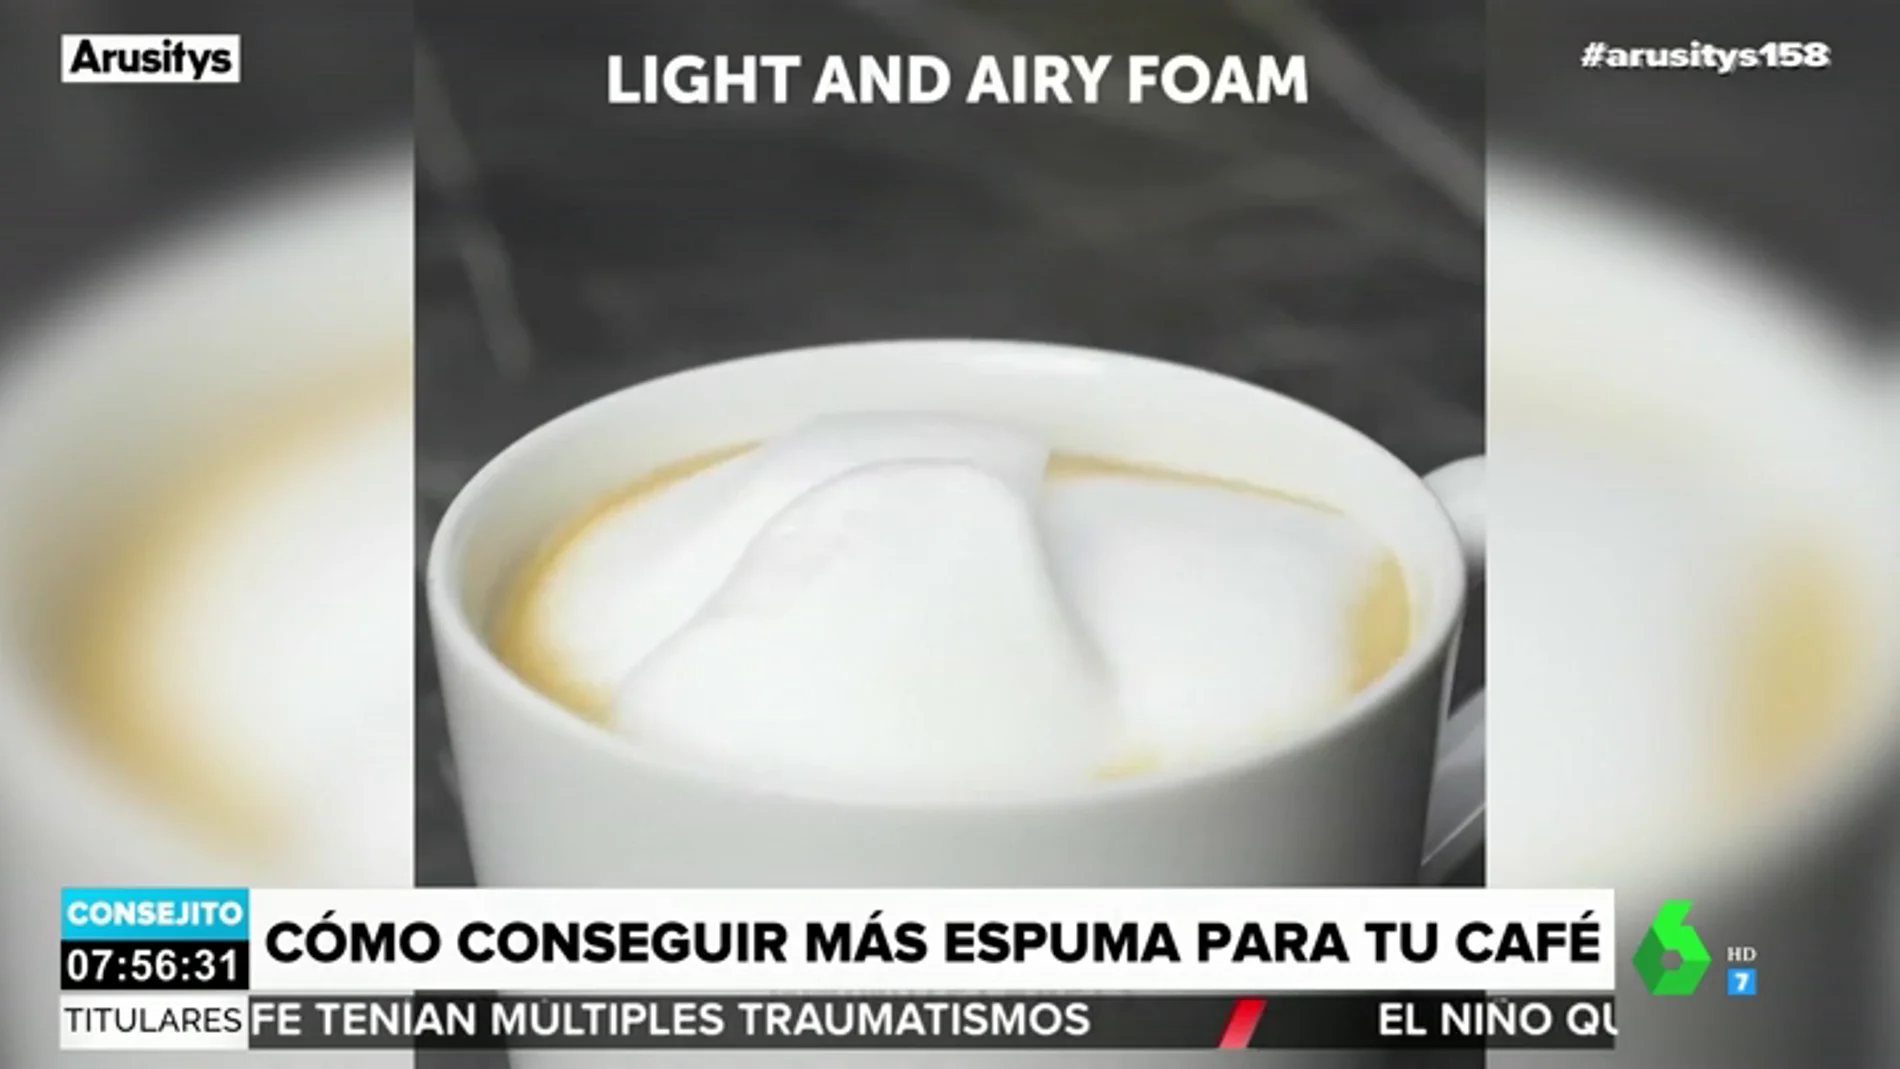 Cómo conseguir más espuma para tu café: así es el sencillo truco que conquista a Arusitys